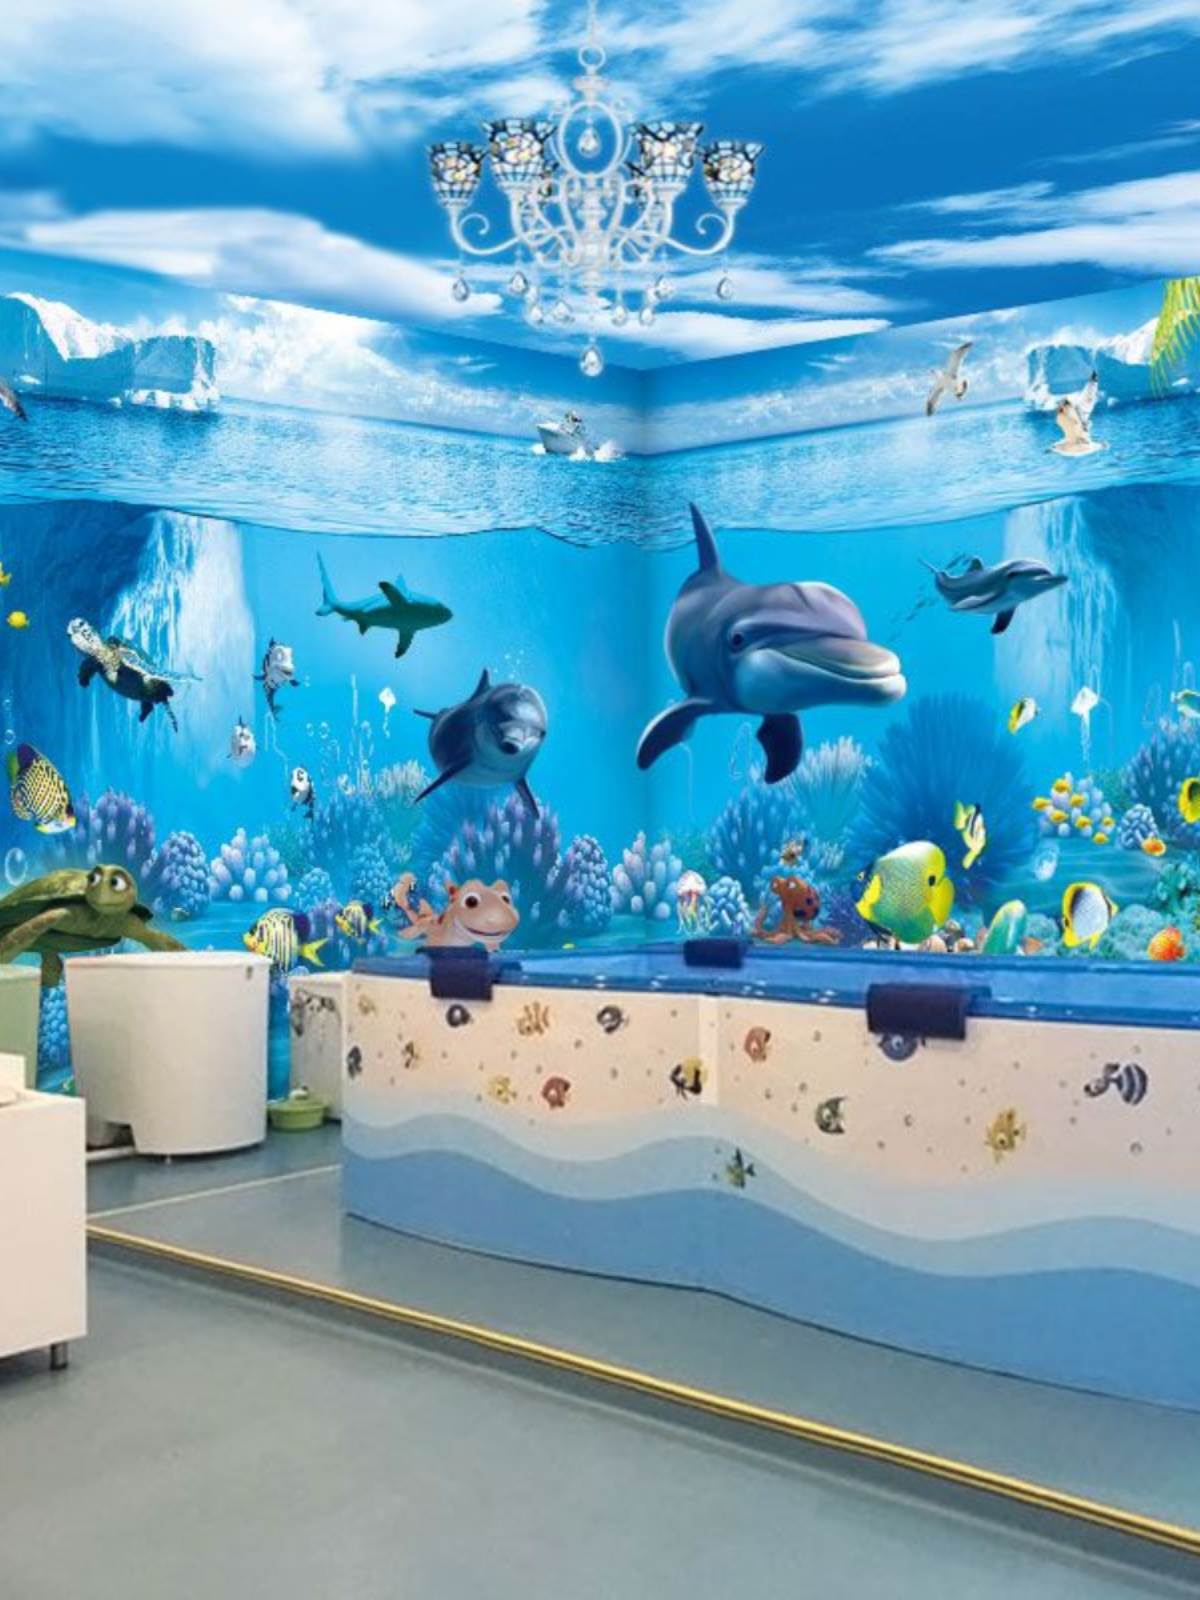 3d海洋主题壁画母婴店游泳馆儿童房海底世界壁纸酒店ktv背景墙纸